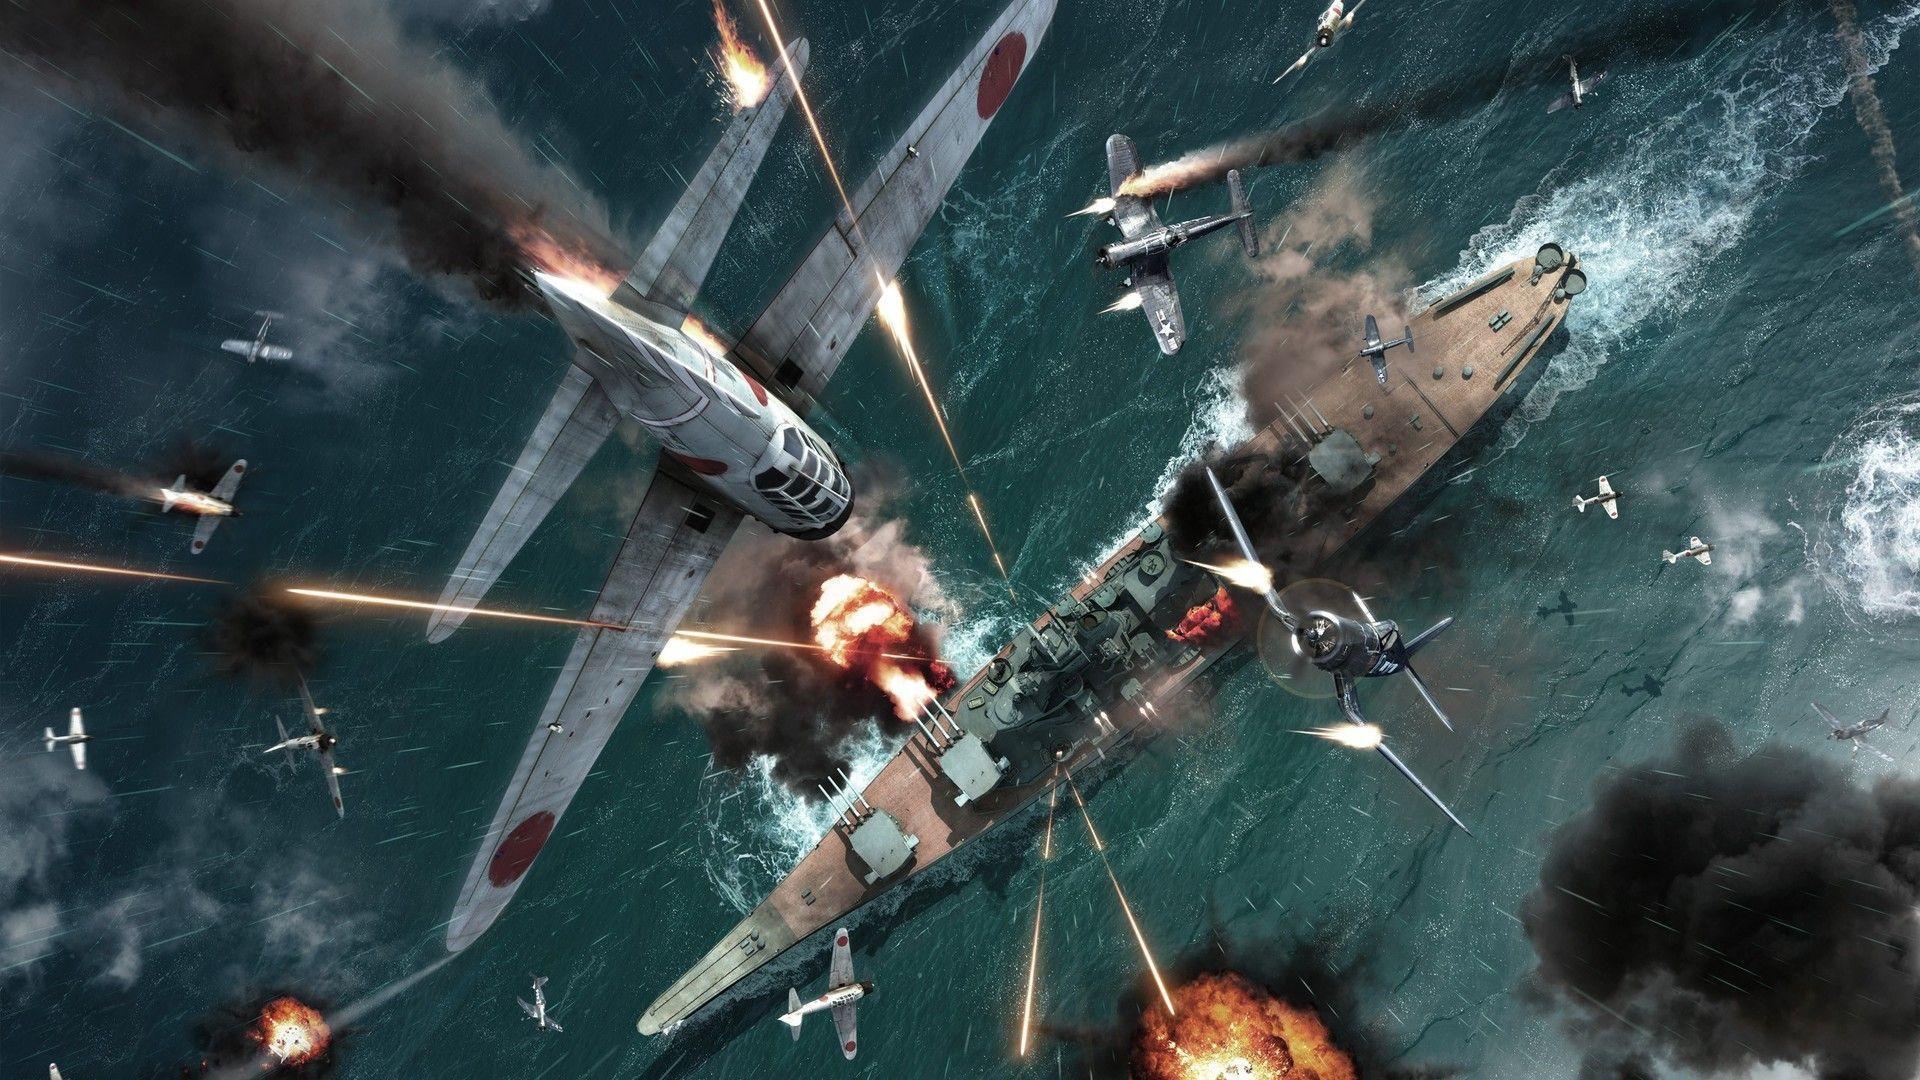 Battleship Firing, iPhone Wallpaper, Facebook Cover, Twitter Cover